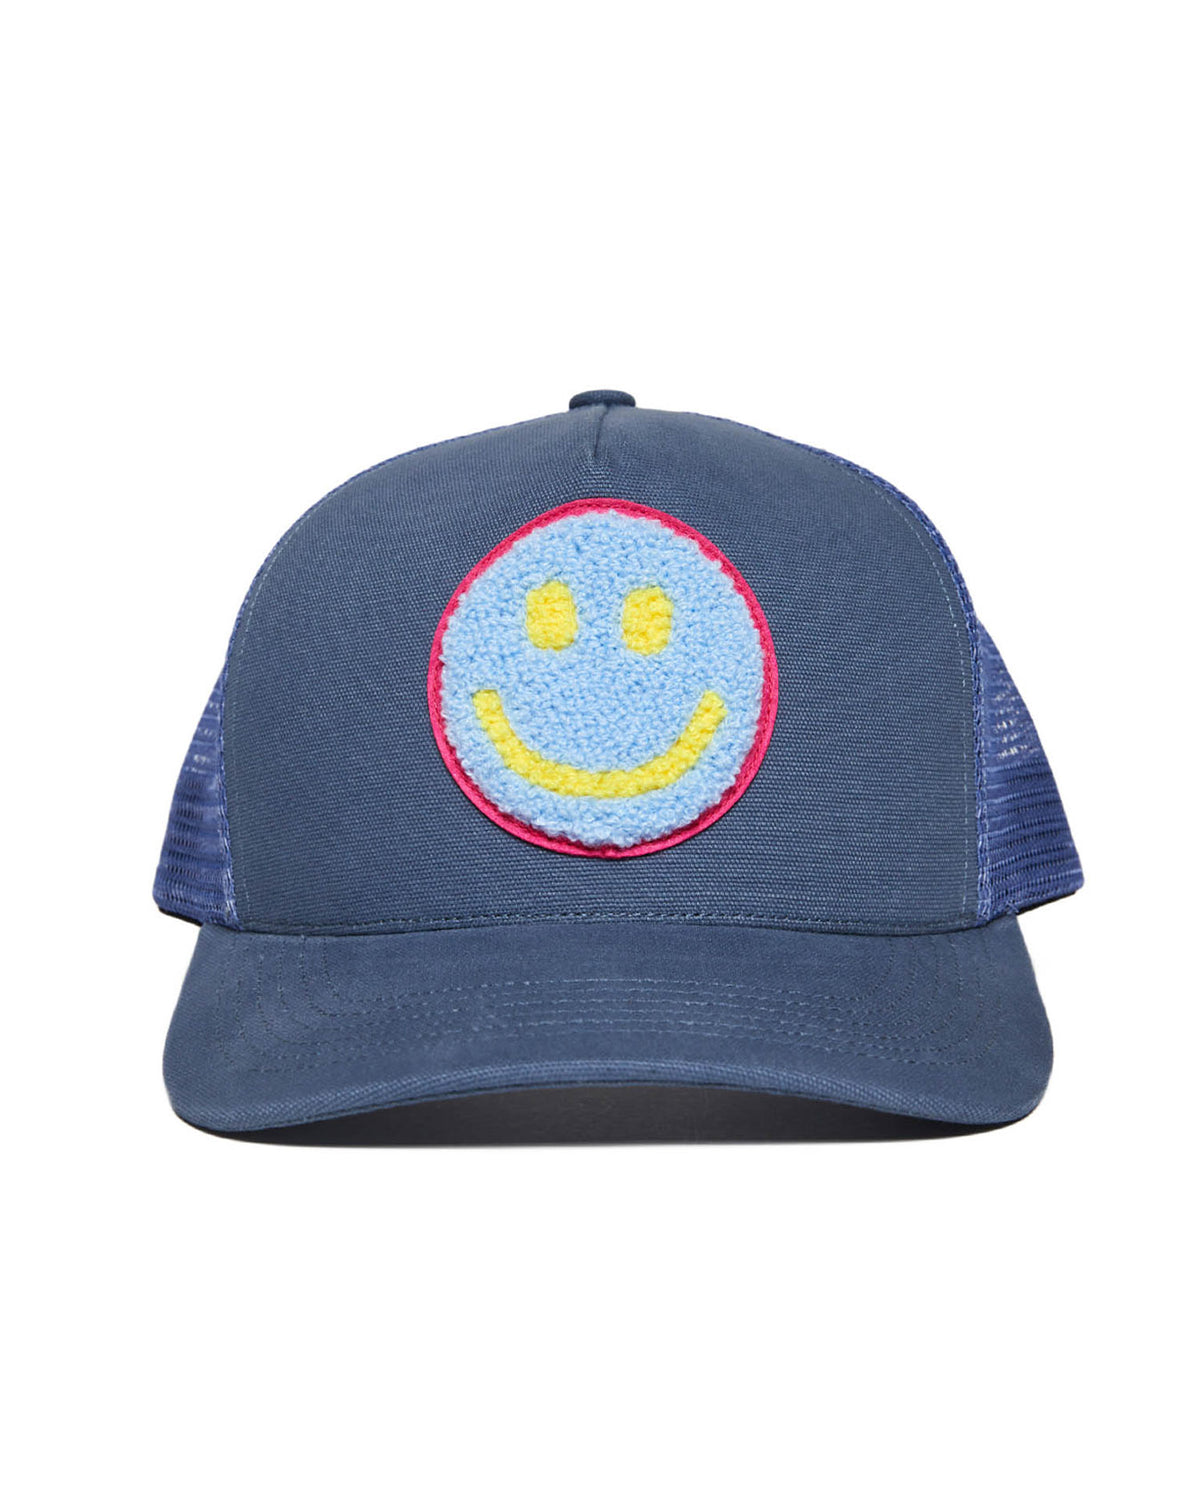 Smiley Trucker Hat In Steel Blue